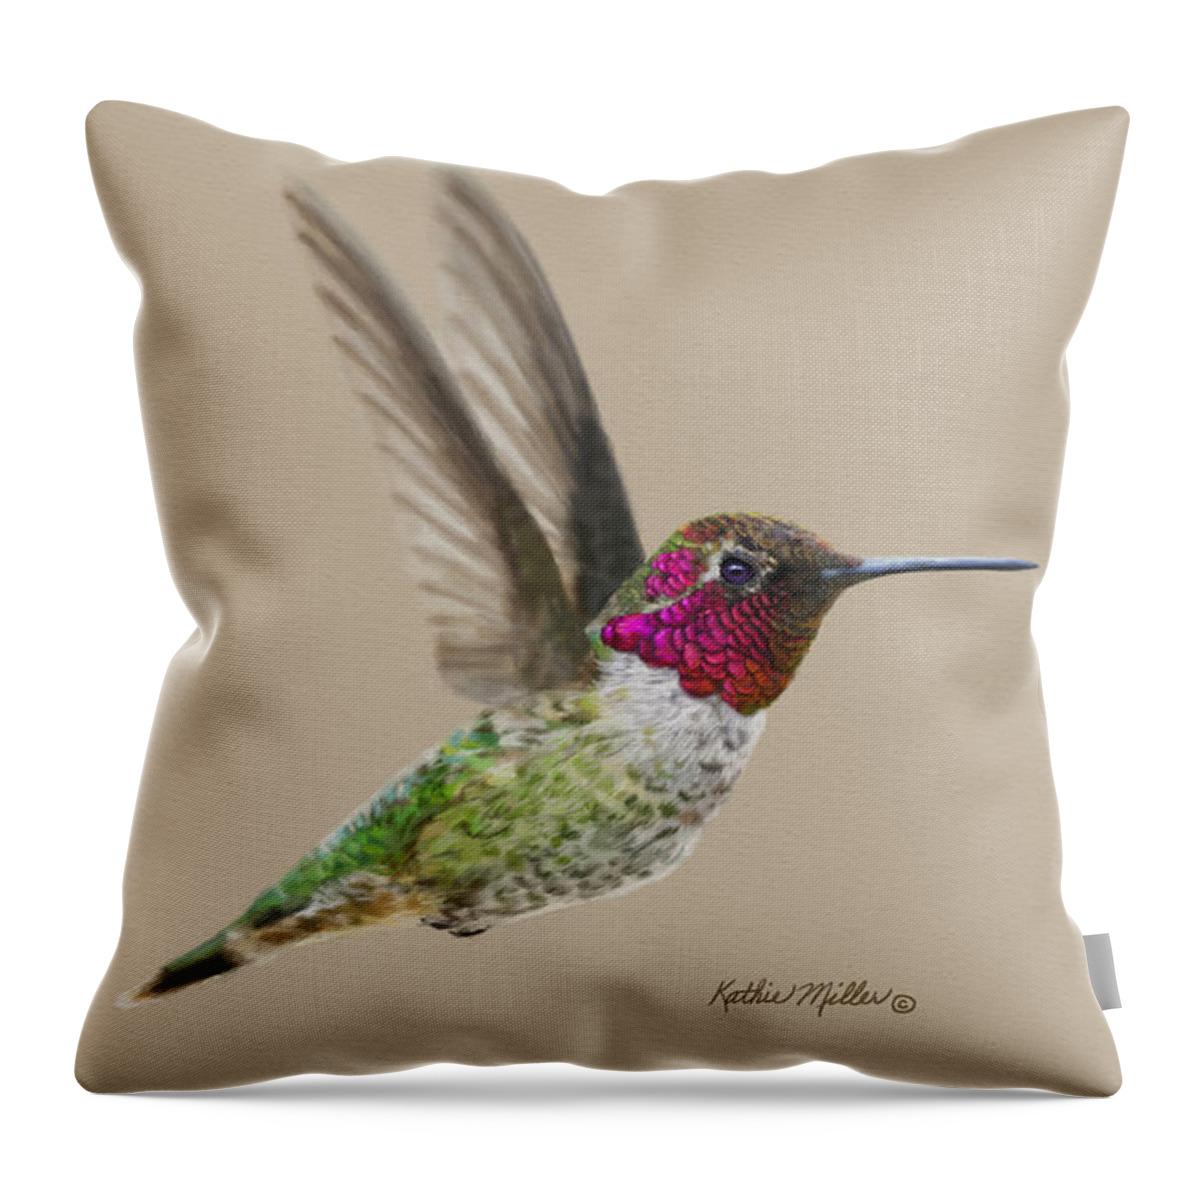 Hummingbird Throw Pillow featuring the digital art Anna's Hummingbird by Kathie Miller